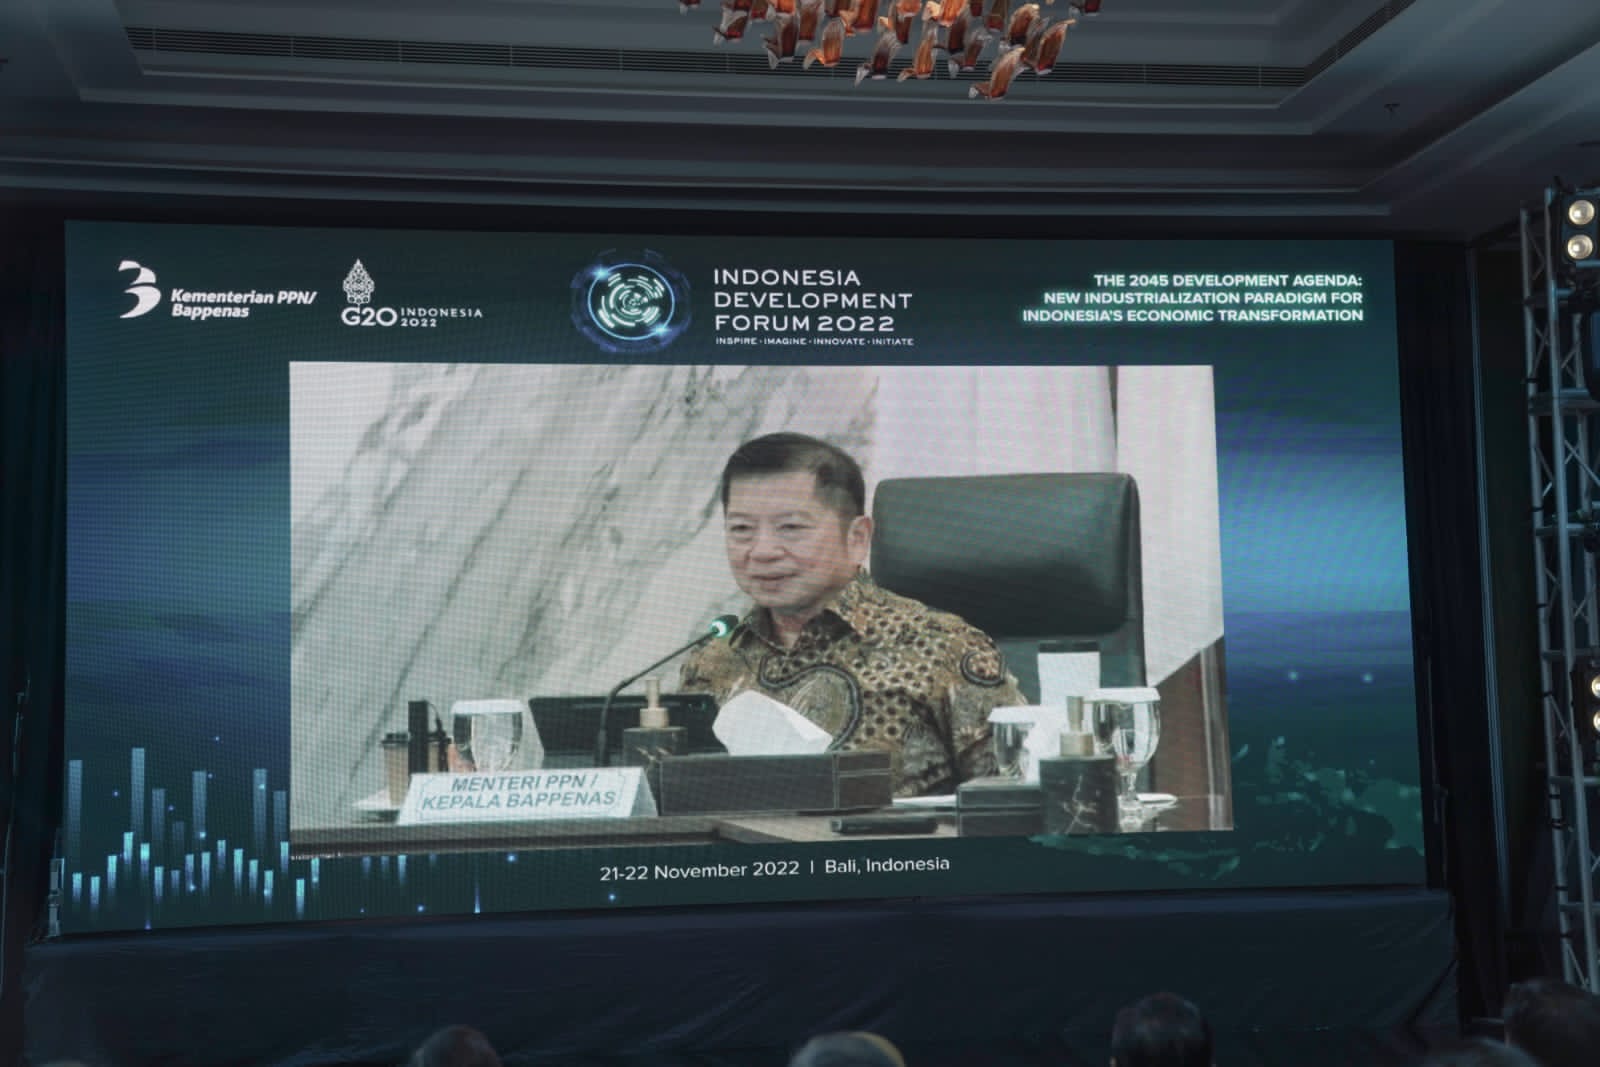 IDF 2022: Capai Visi Indonesia 2045 dengan Paradigma Baru Industrialisasi